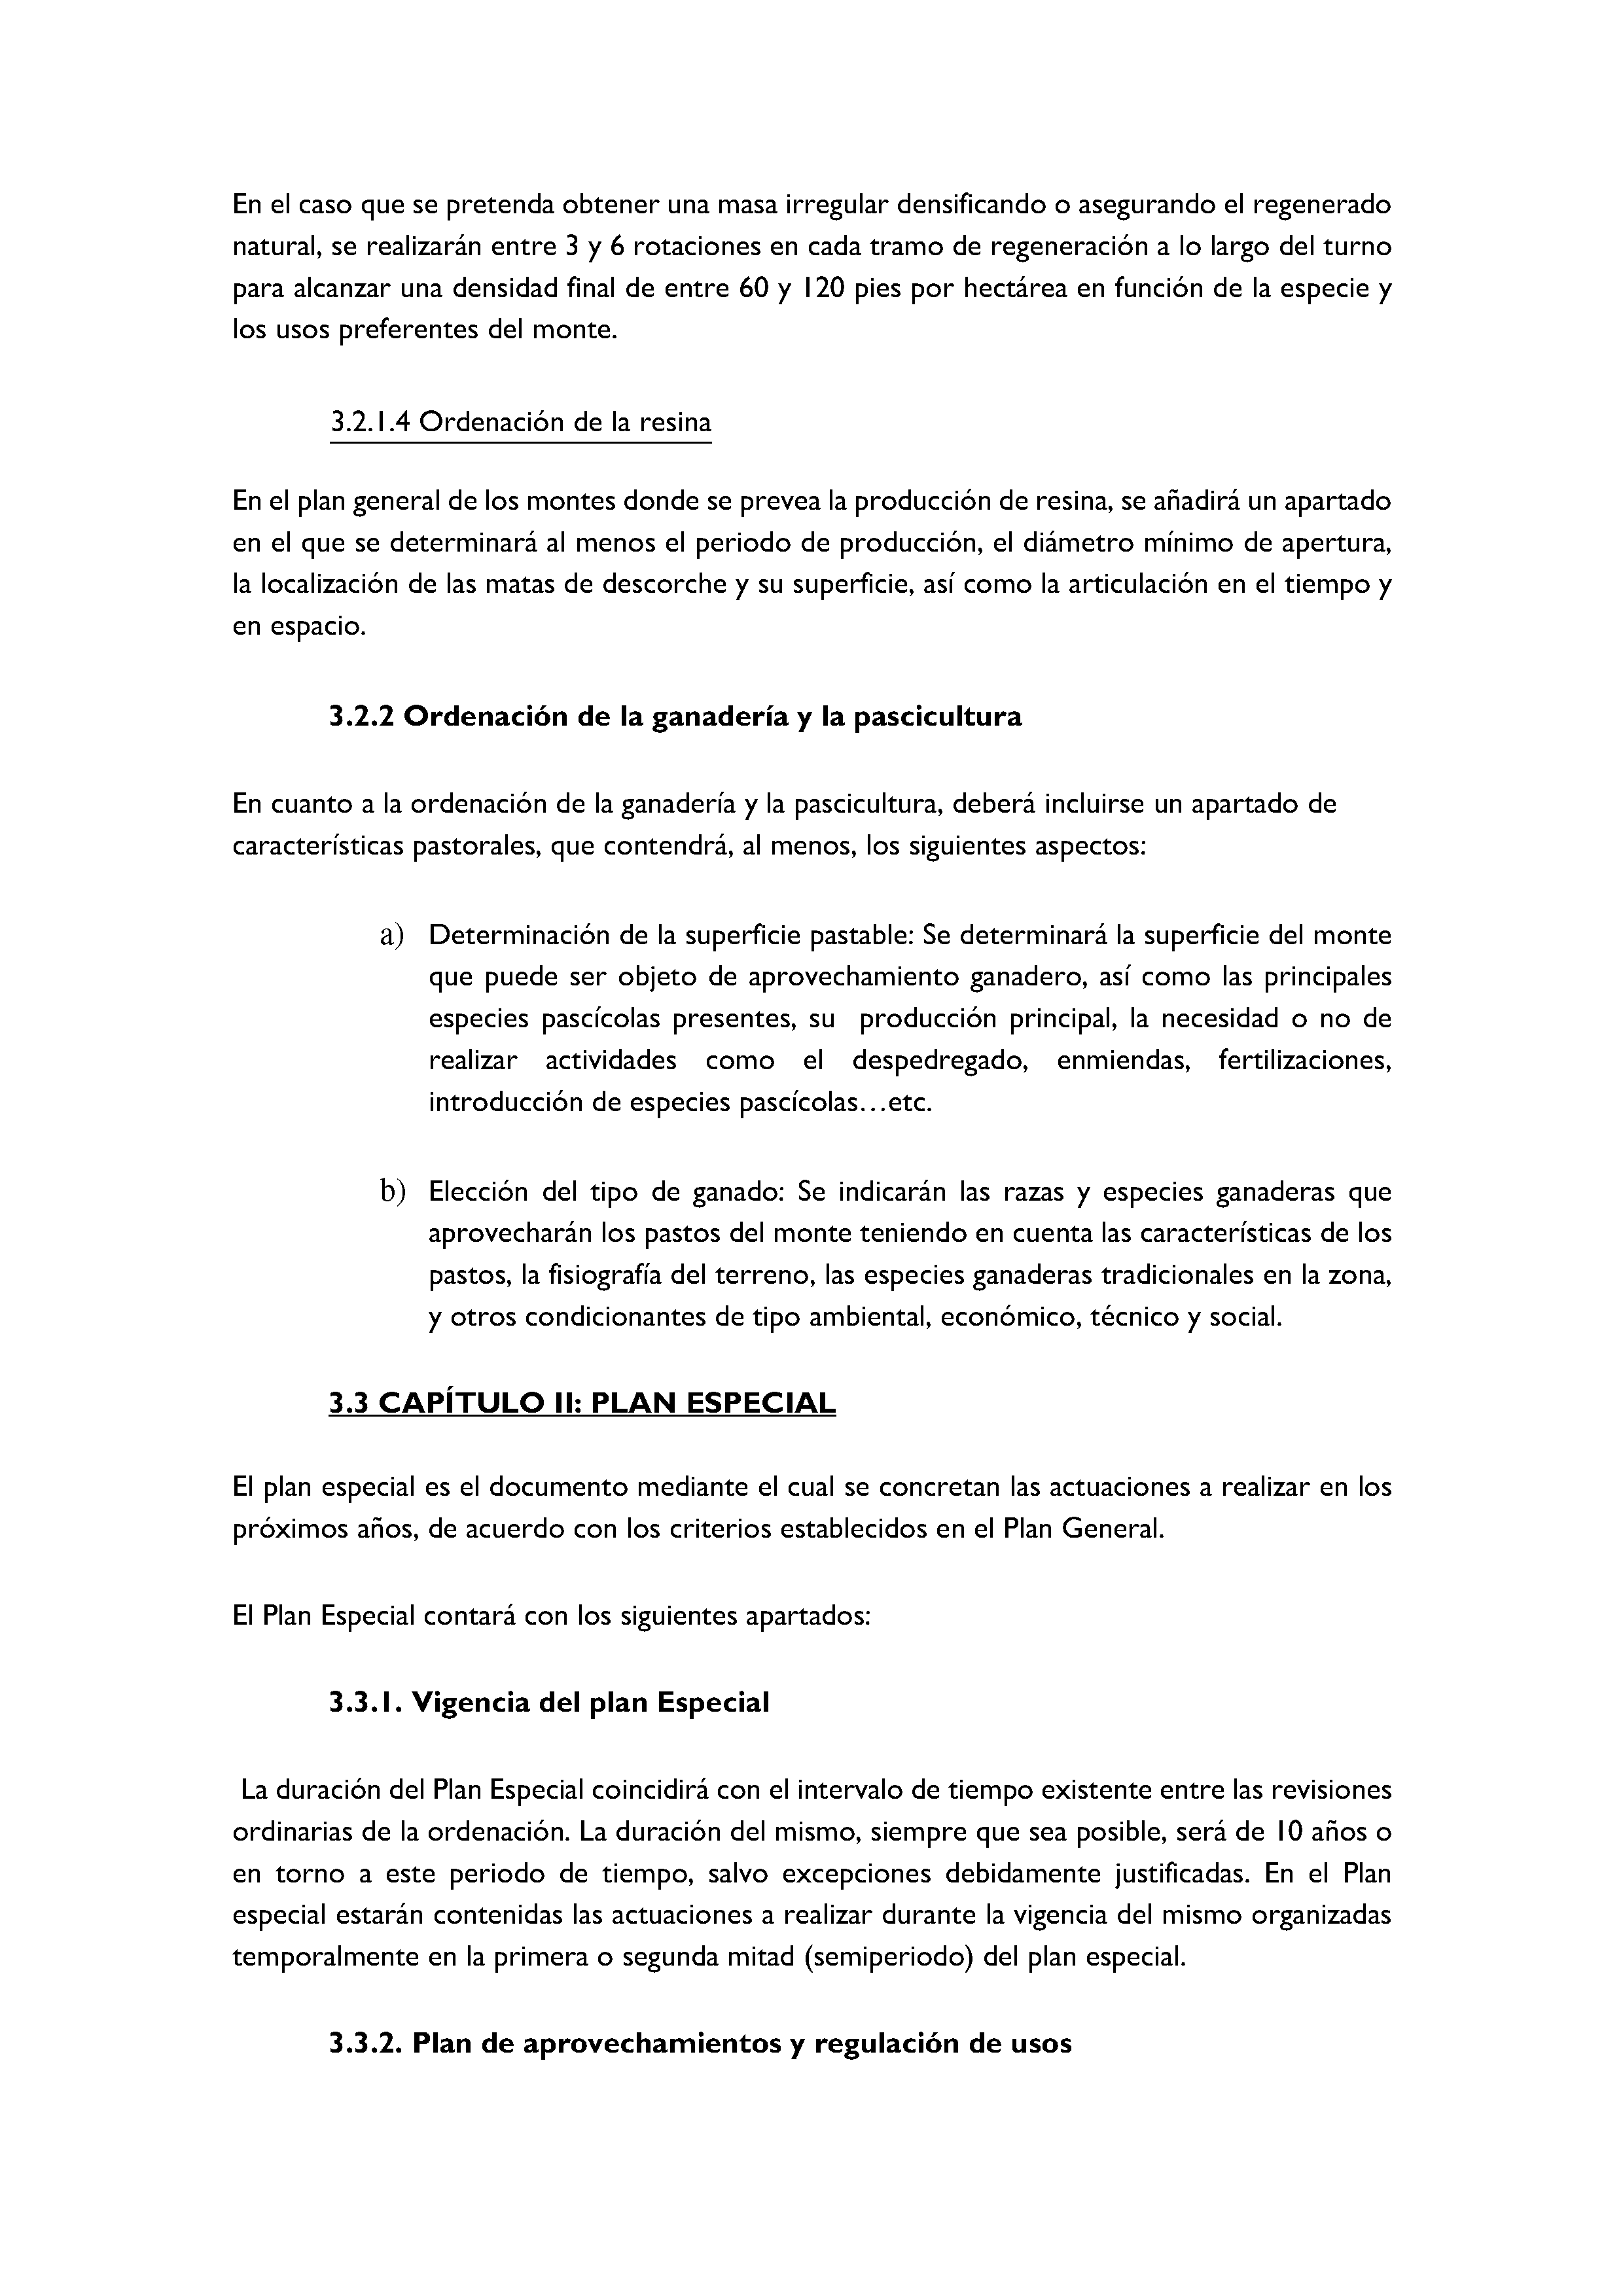 ANEXO - INSTRUCCIONES DE ORDENACIÓN DE LOS PROYECTOS DE ORDENACIÓN DE MONTES Pag 96